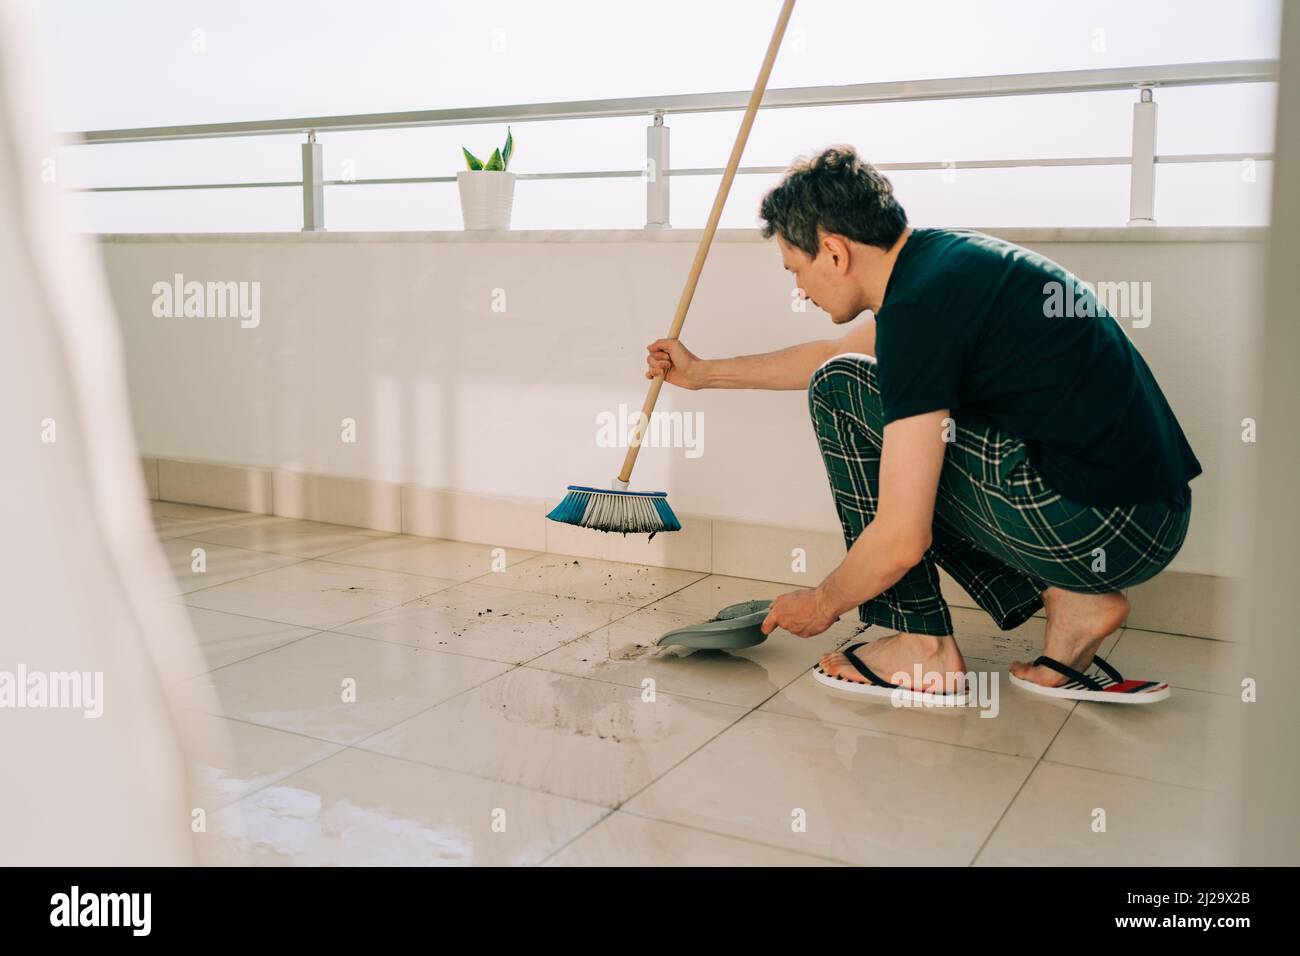 Fotos de Negro hombre piso de limpieza con aspiradora y fregona - Imagen de  © Milkos #223508208